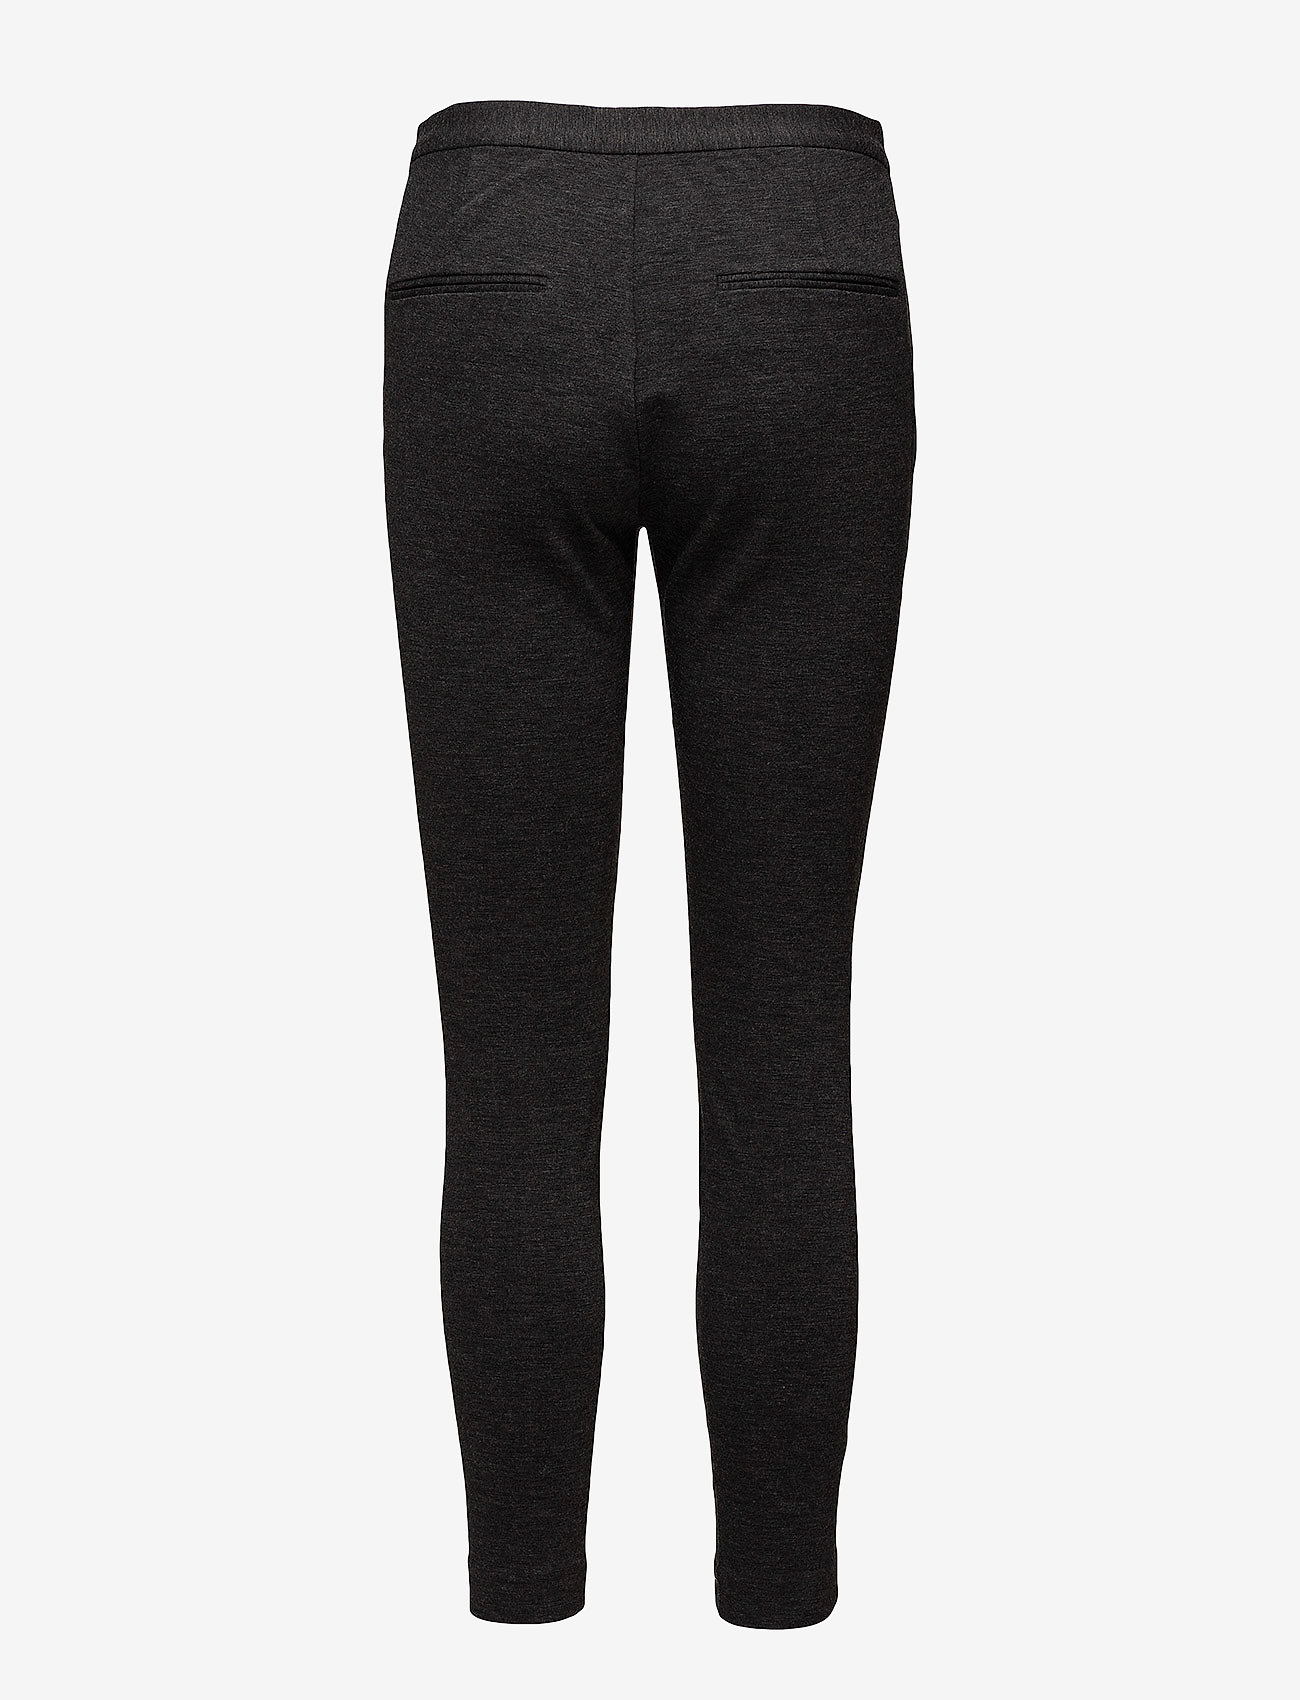 InWear - Venche N Slim Pant - trousers with skinny legs - dark grey melange - 1